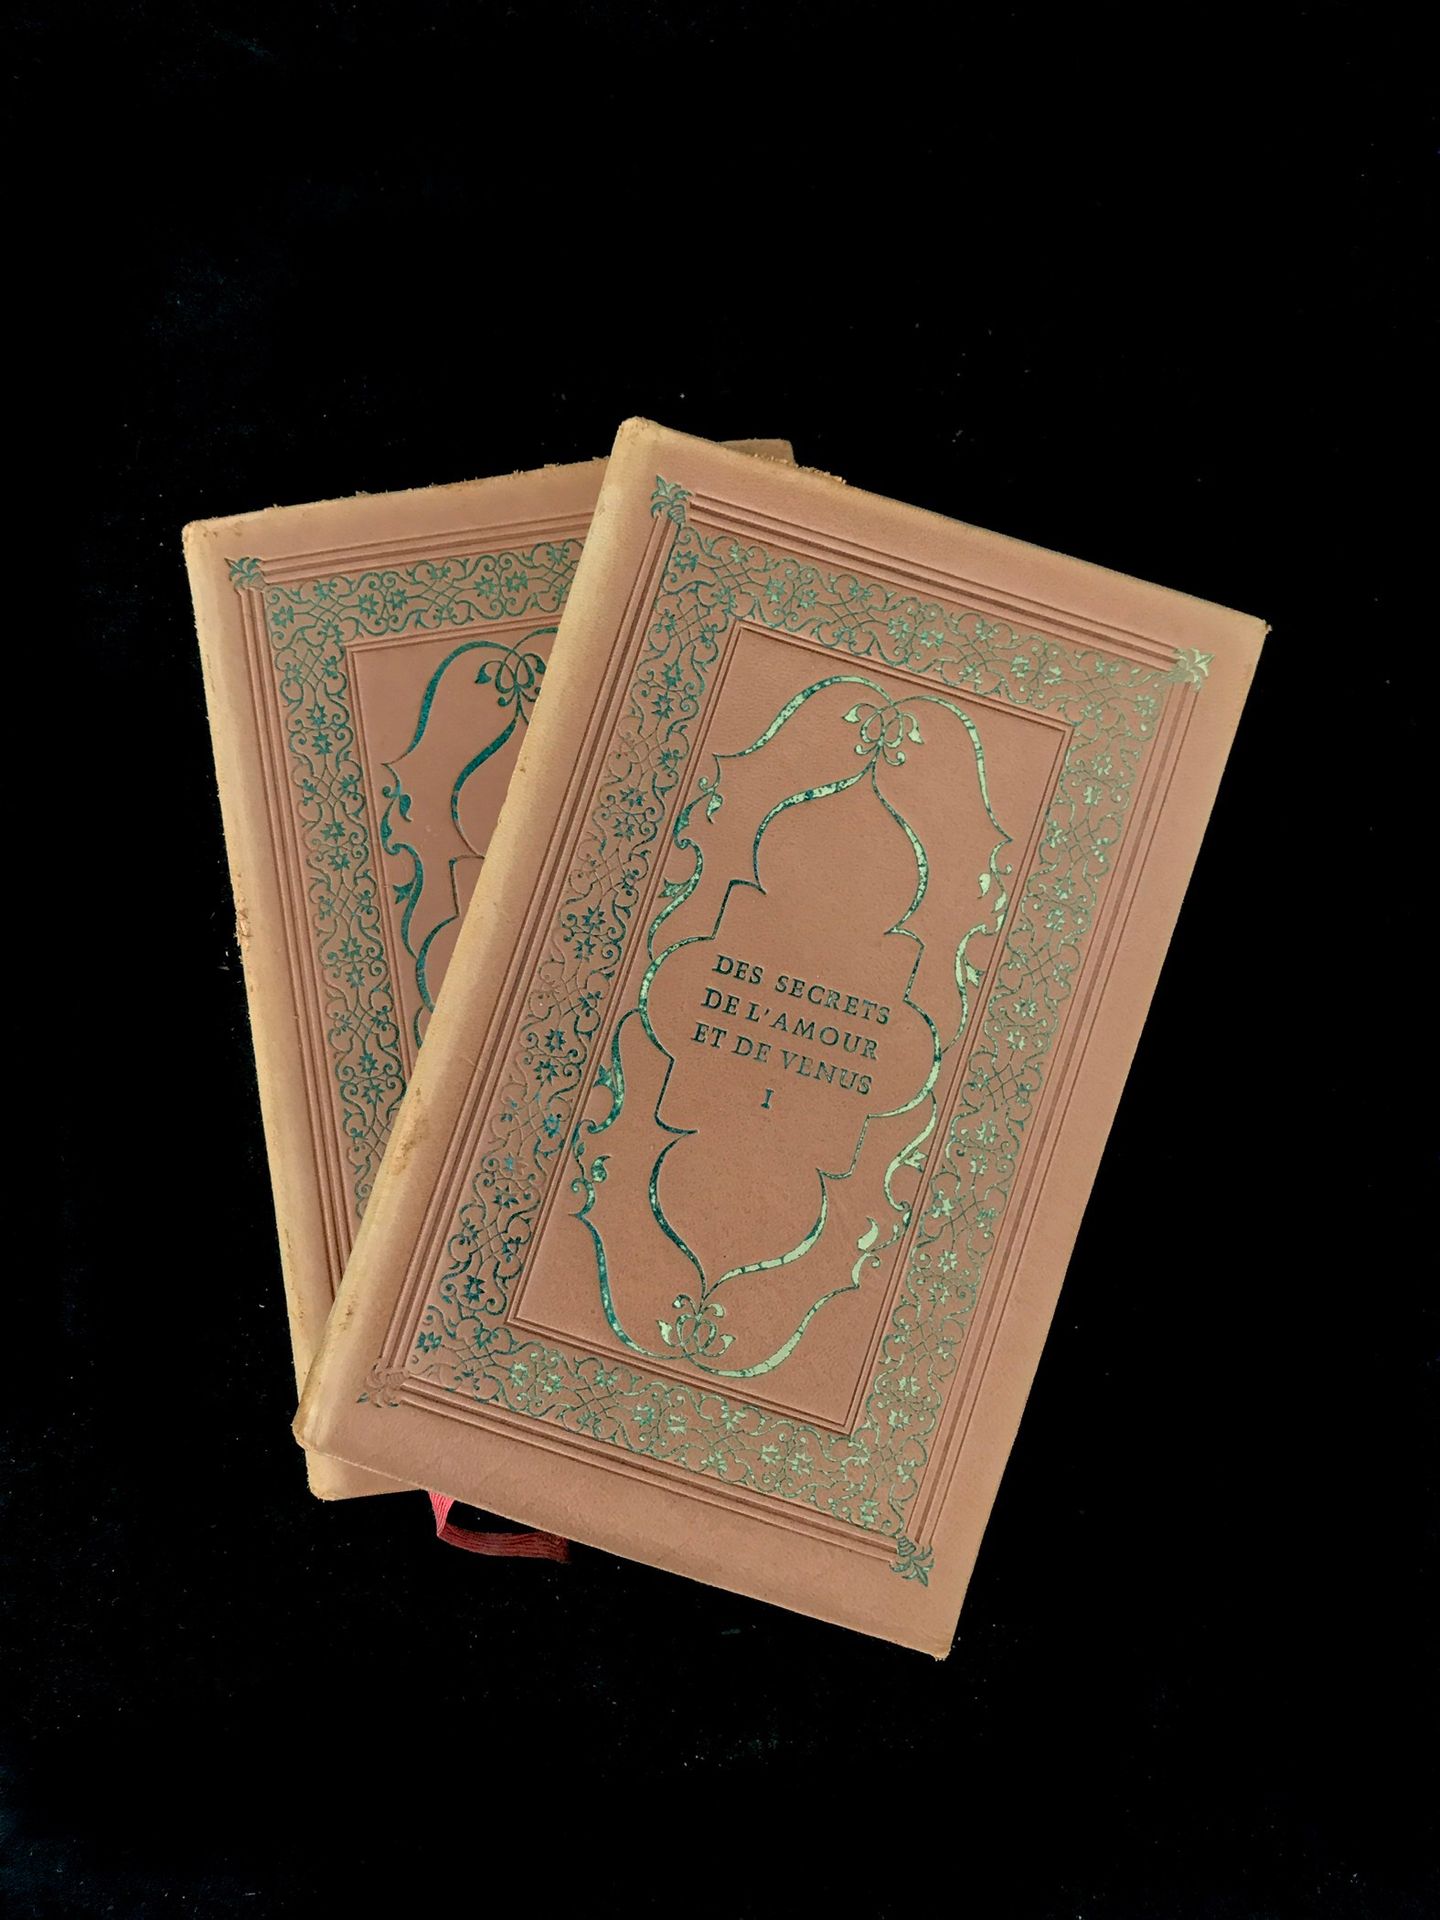 Null 乔里耶-尼可拉斯，《爱与维纳斯的秘密》，由 "珍贵图书协会 "出版，1959年，12开本。

2卷。N°3118/3500份，为会员保留。安德烈-贝里&hellip;